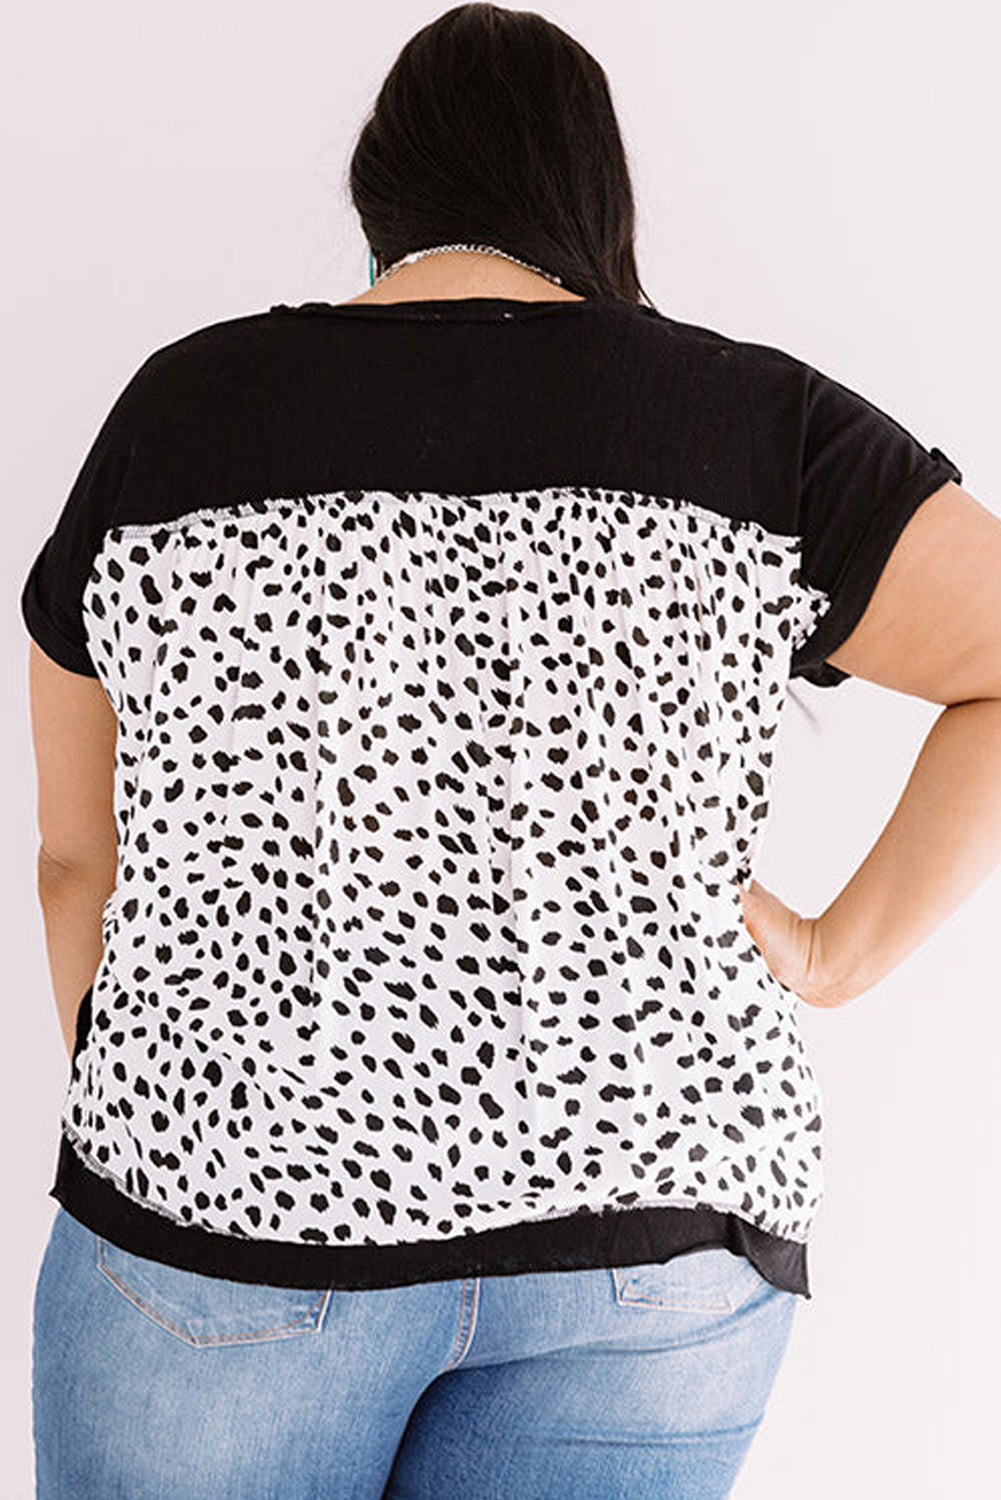 T-shirt Noir à Poignets Roulés au Dos Cheetah Grande Taille